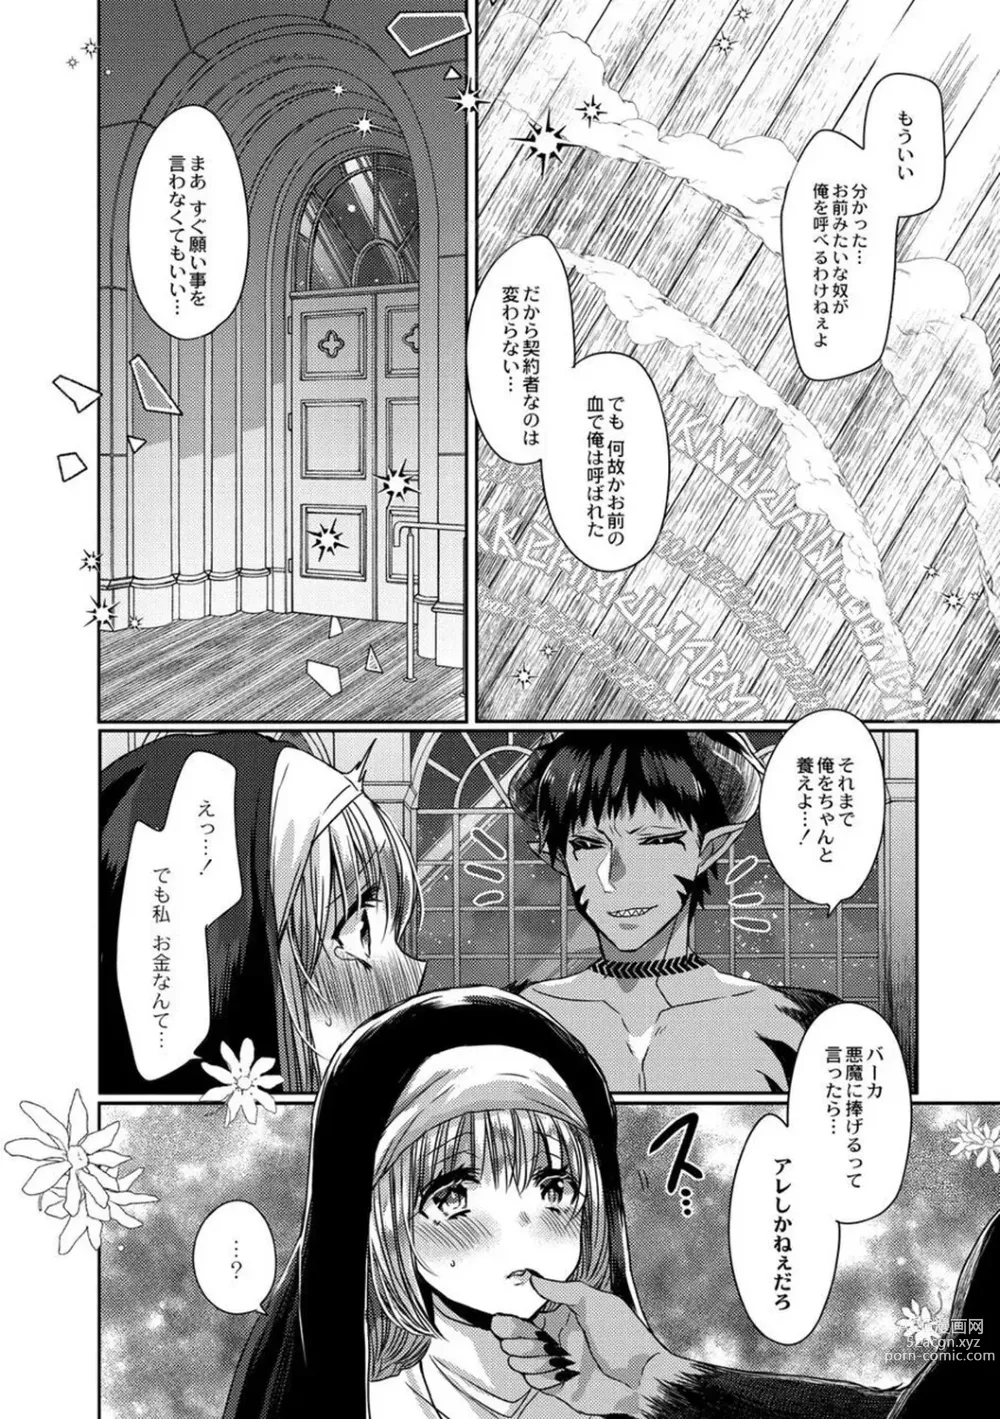 Page 14 of manga Junai Holic